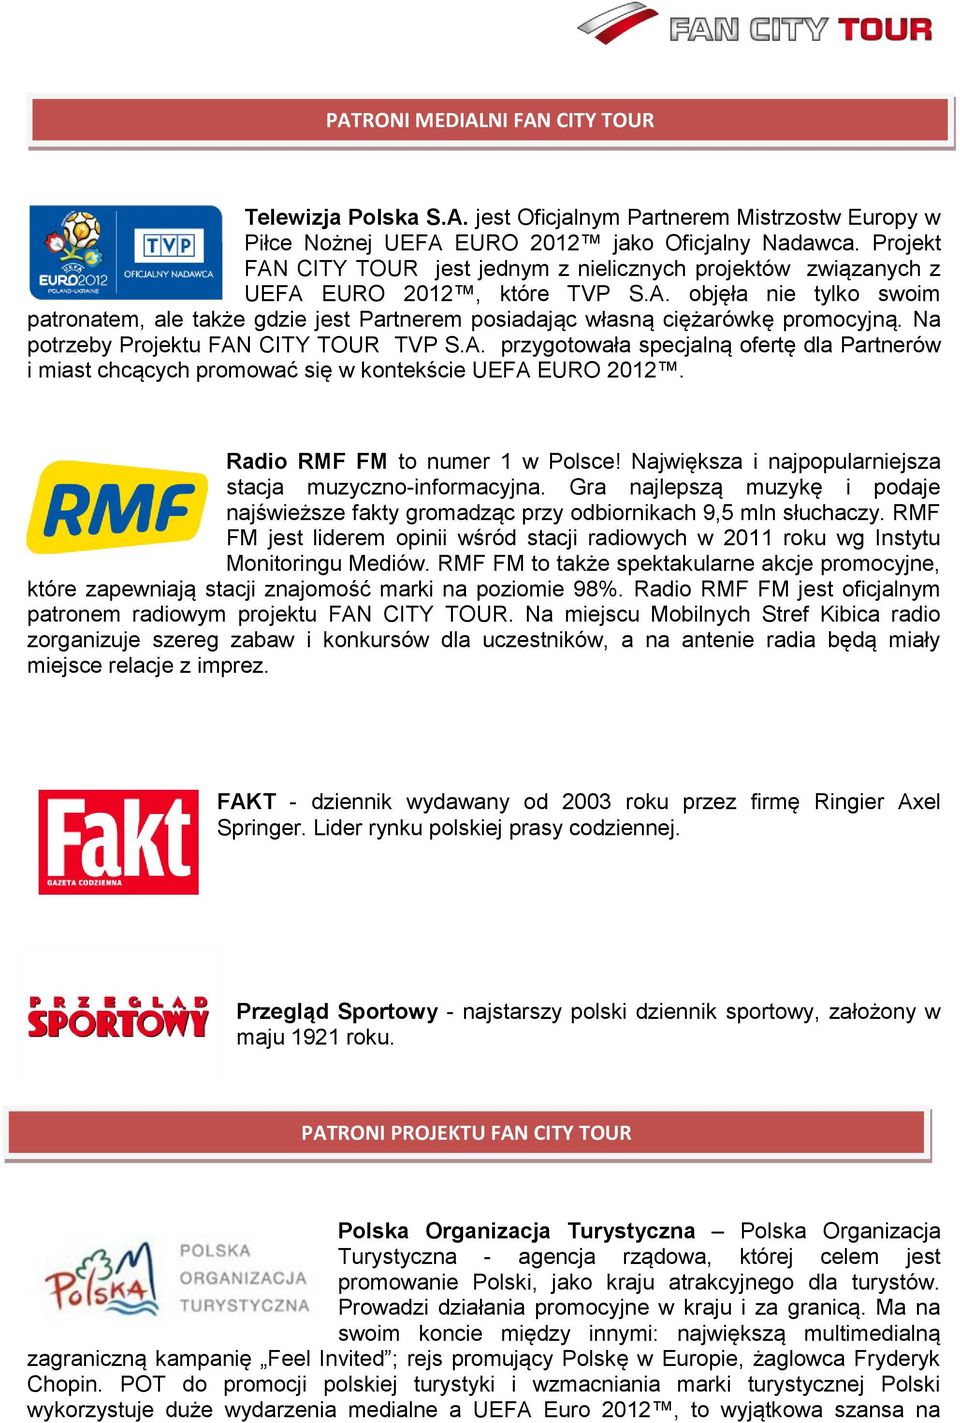 Na potrzeby Projektu FAN CITY TOUR TVP S.A. przygotowała specjalną ofertę dla Partnerów i miast chcących promować się w kontekście UEFA EURO 2012. Radio RMF FM to numer 1 w Polsce!